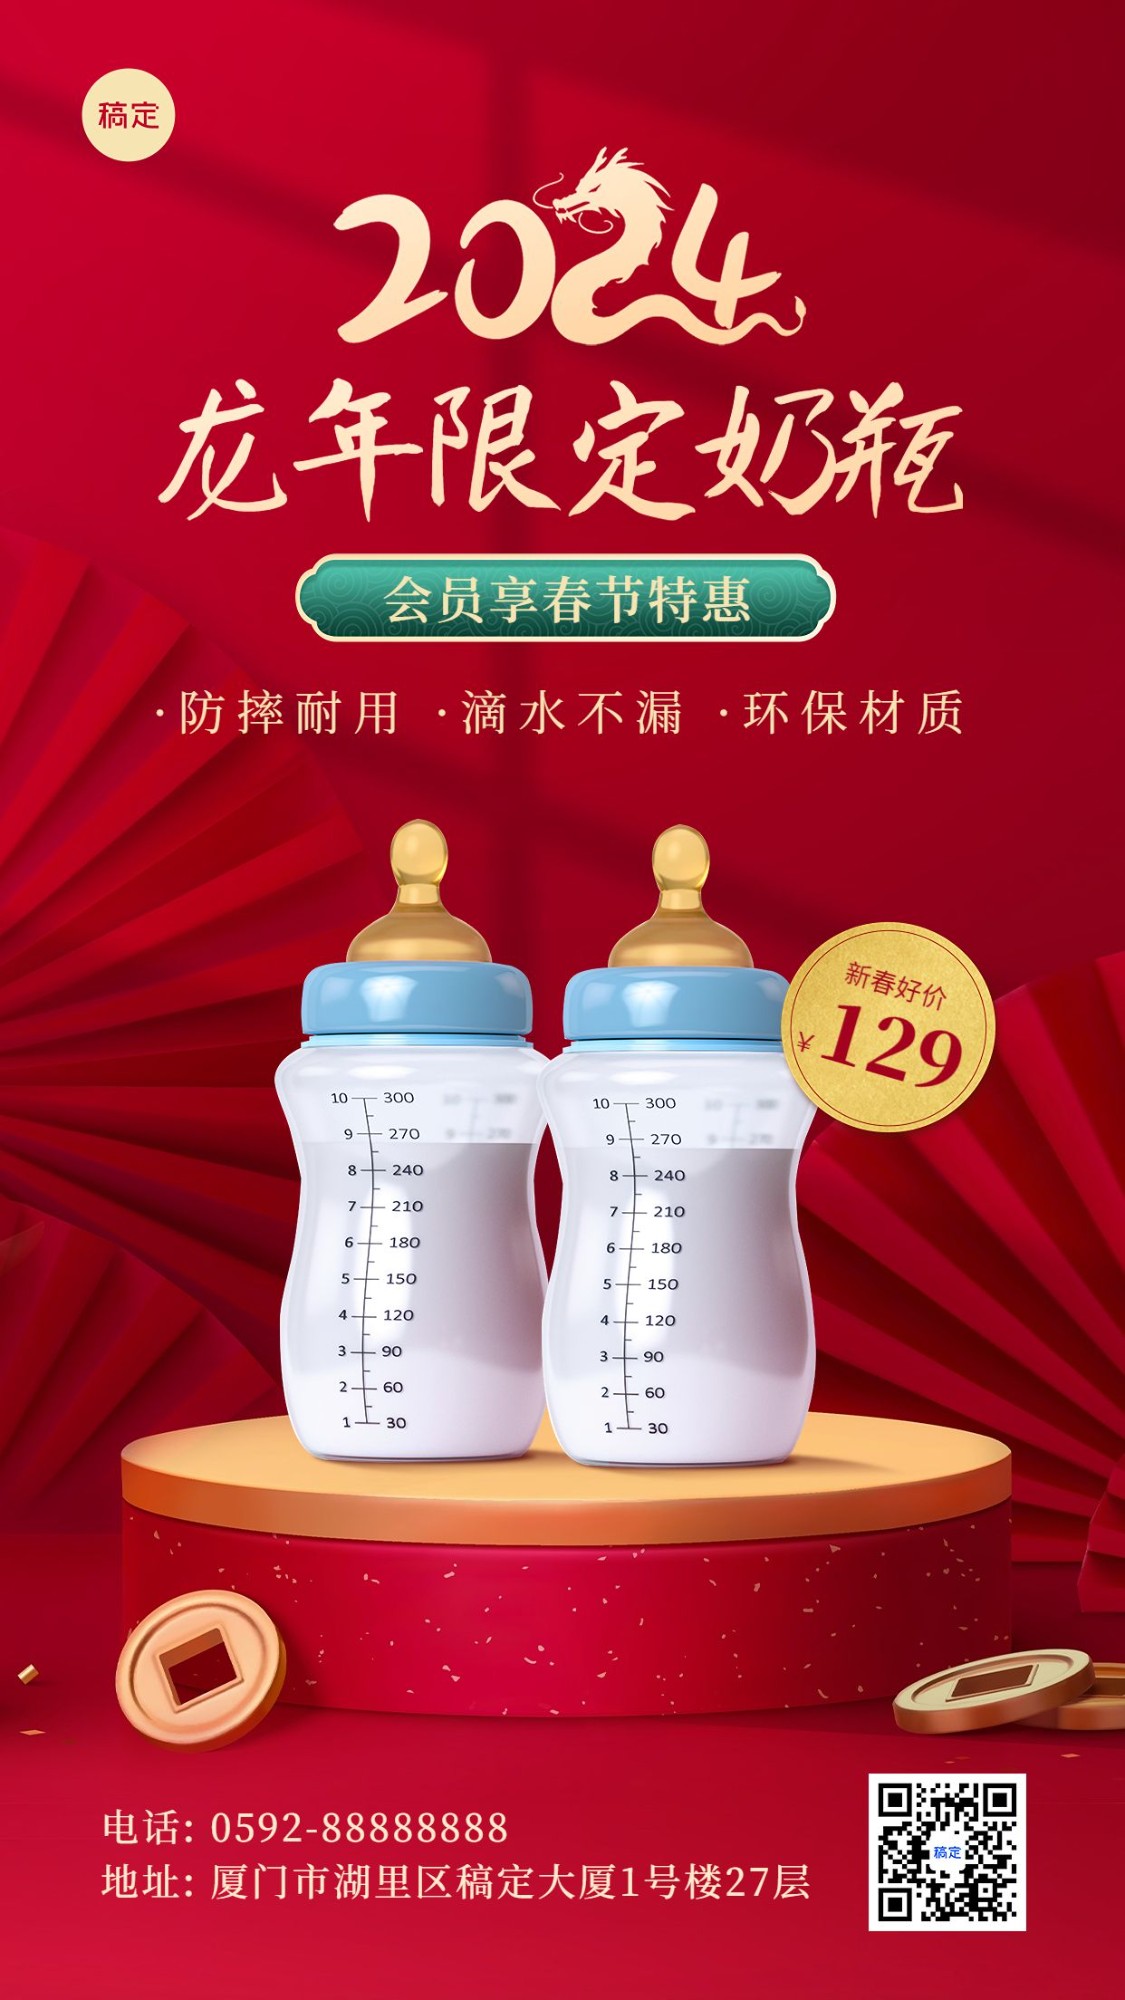 春节龙年节日营销产品展示手机海报预览效果